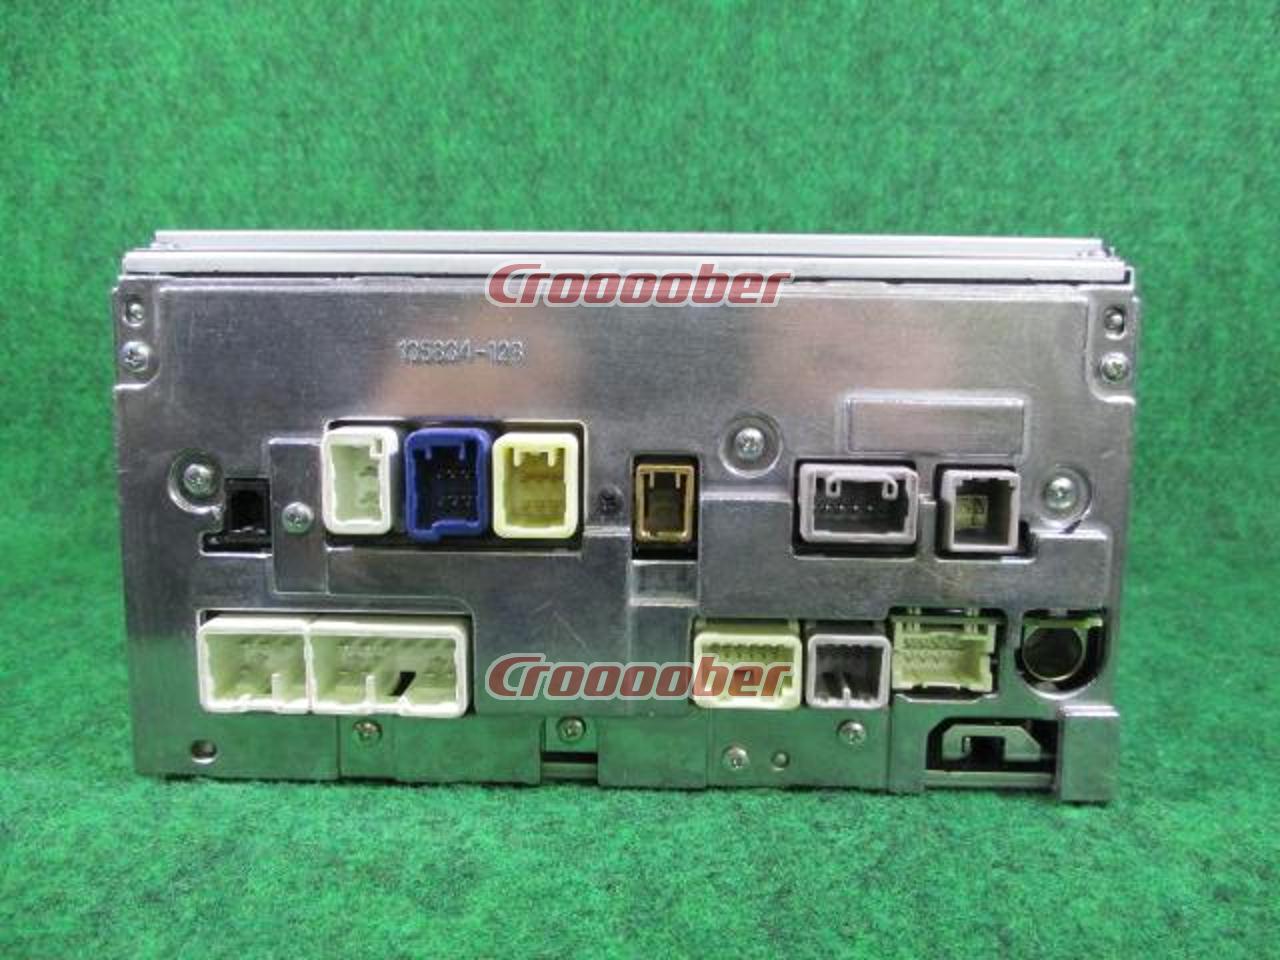 トヨタ純正 NSCT-W61(7インチタッチパネル ワンセグ対応8GBメモリー 